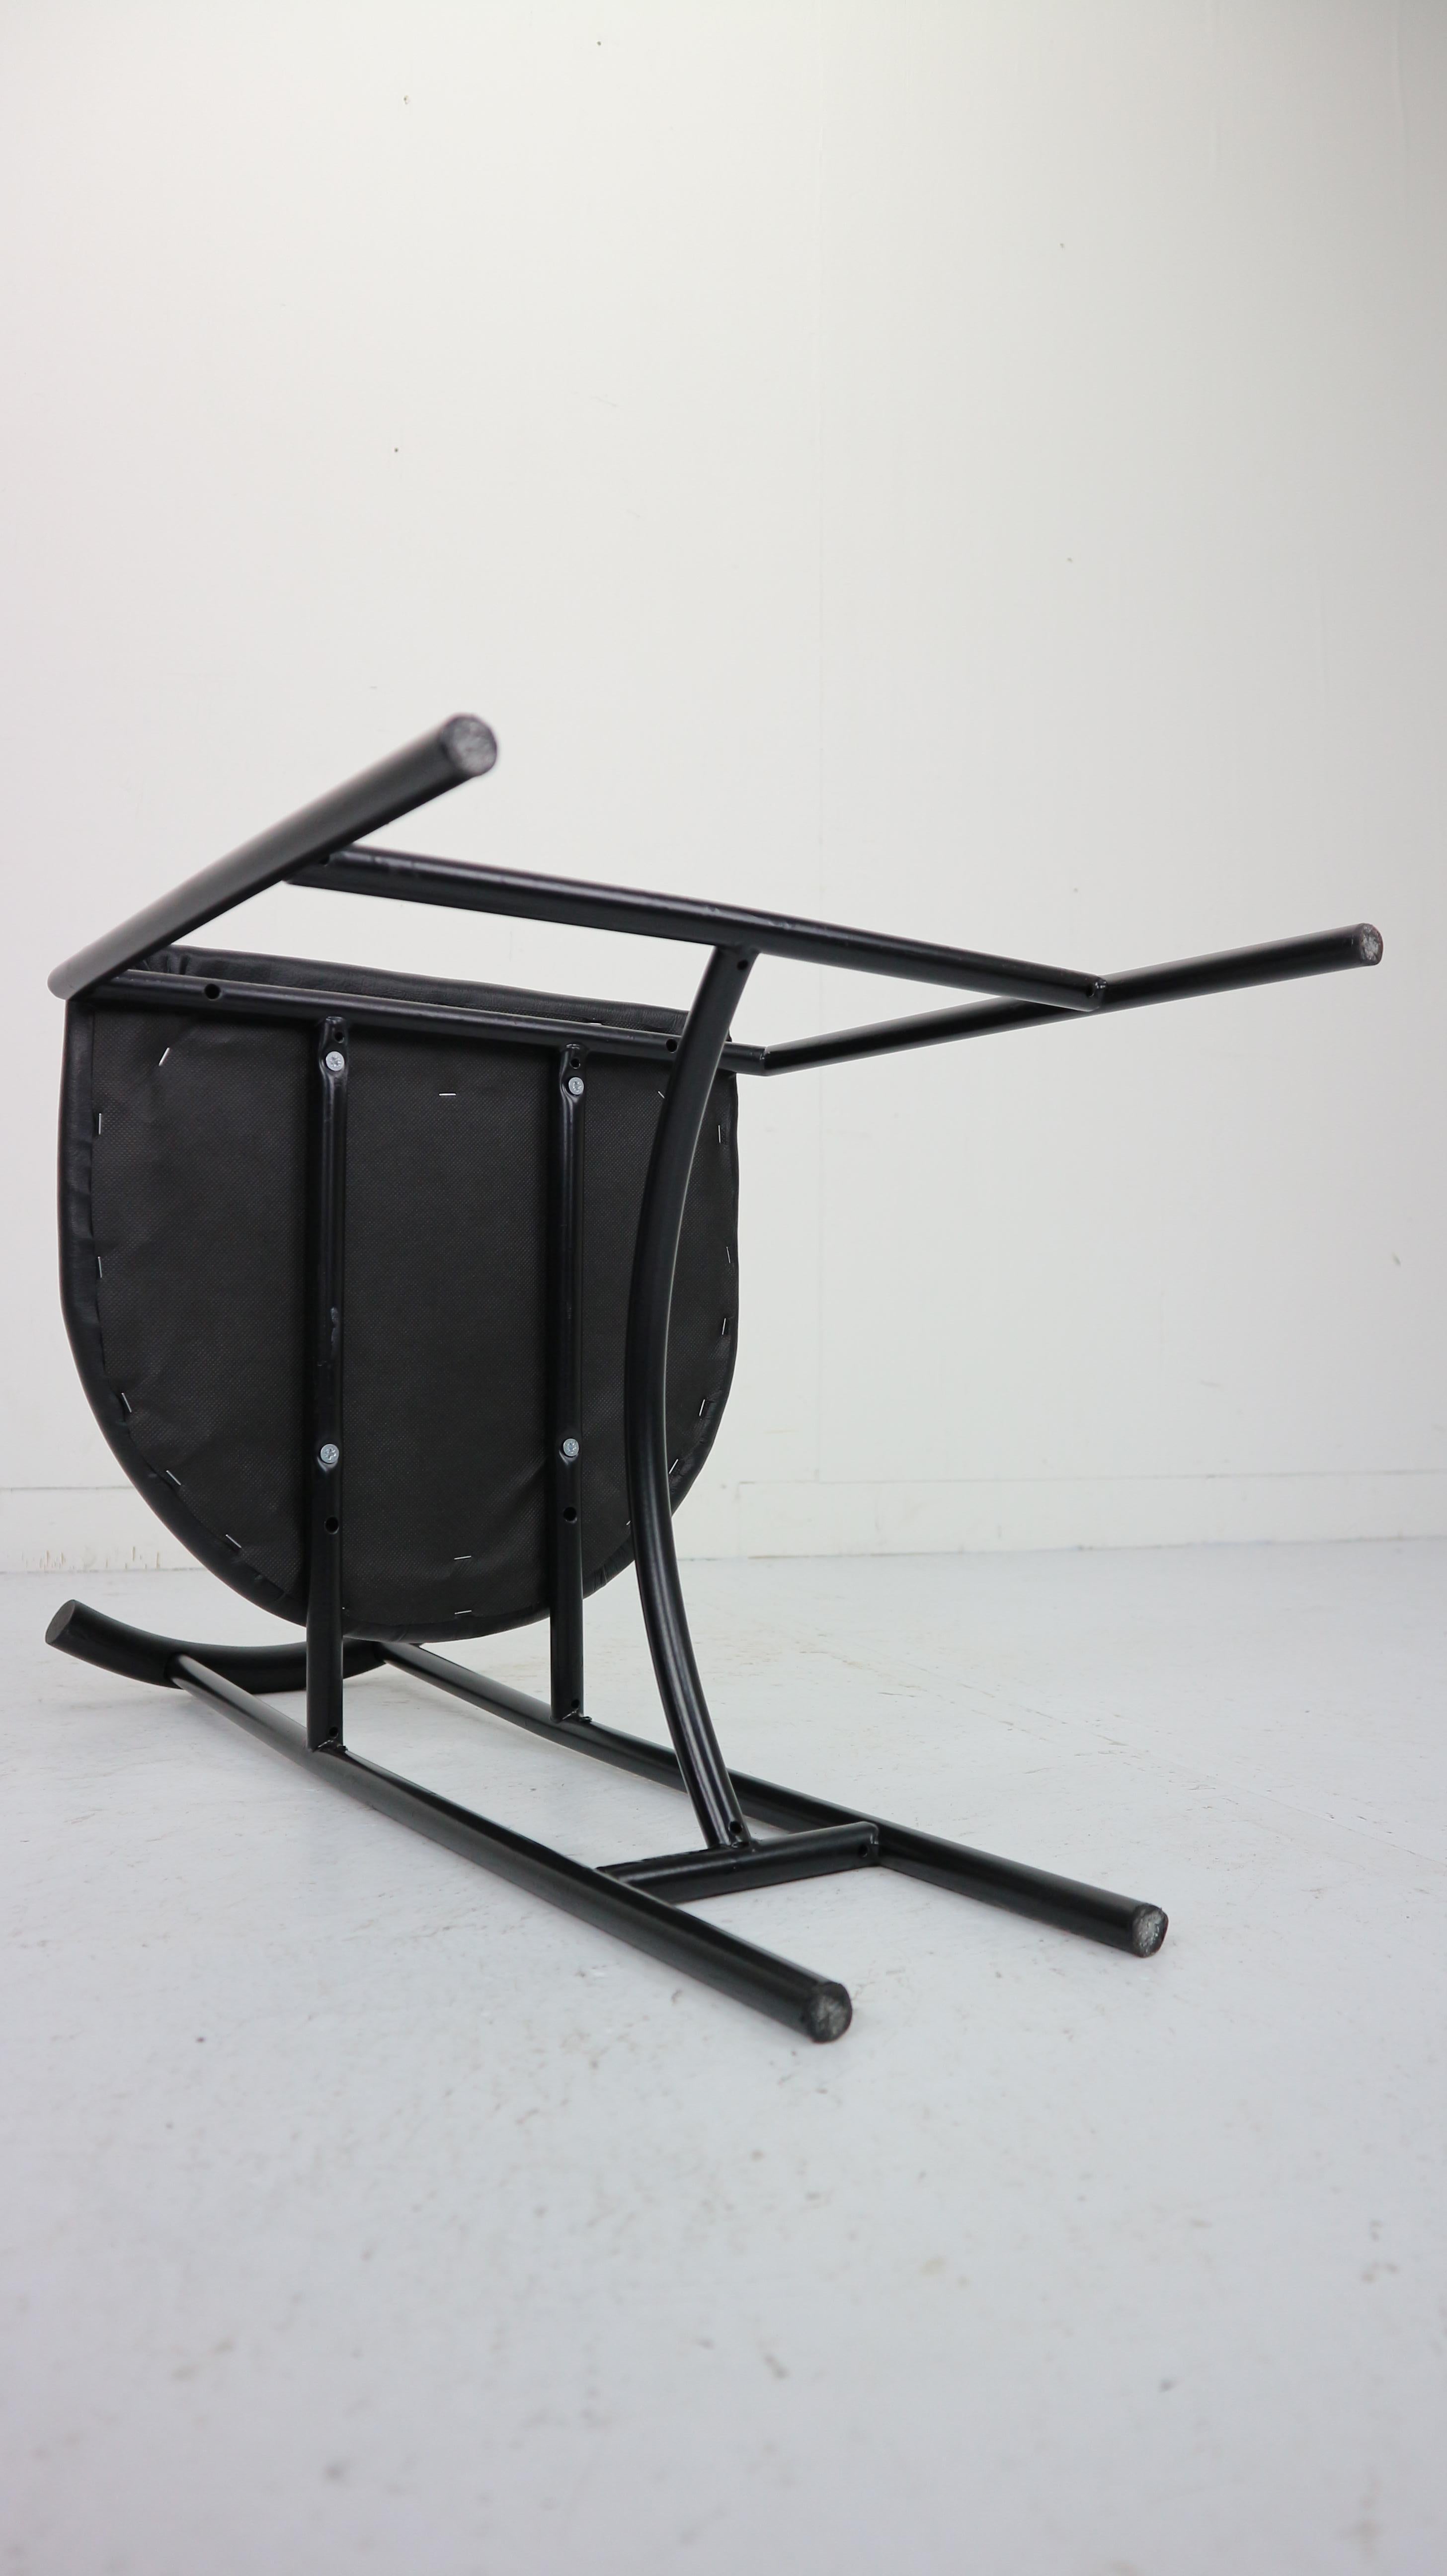 Bieffeplast 'Tokyo' Chair by Rodney Kinsman, 1985, Italy 11